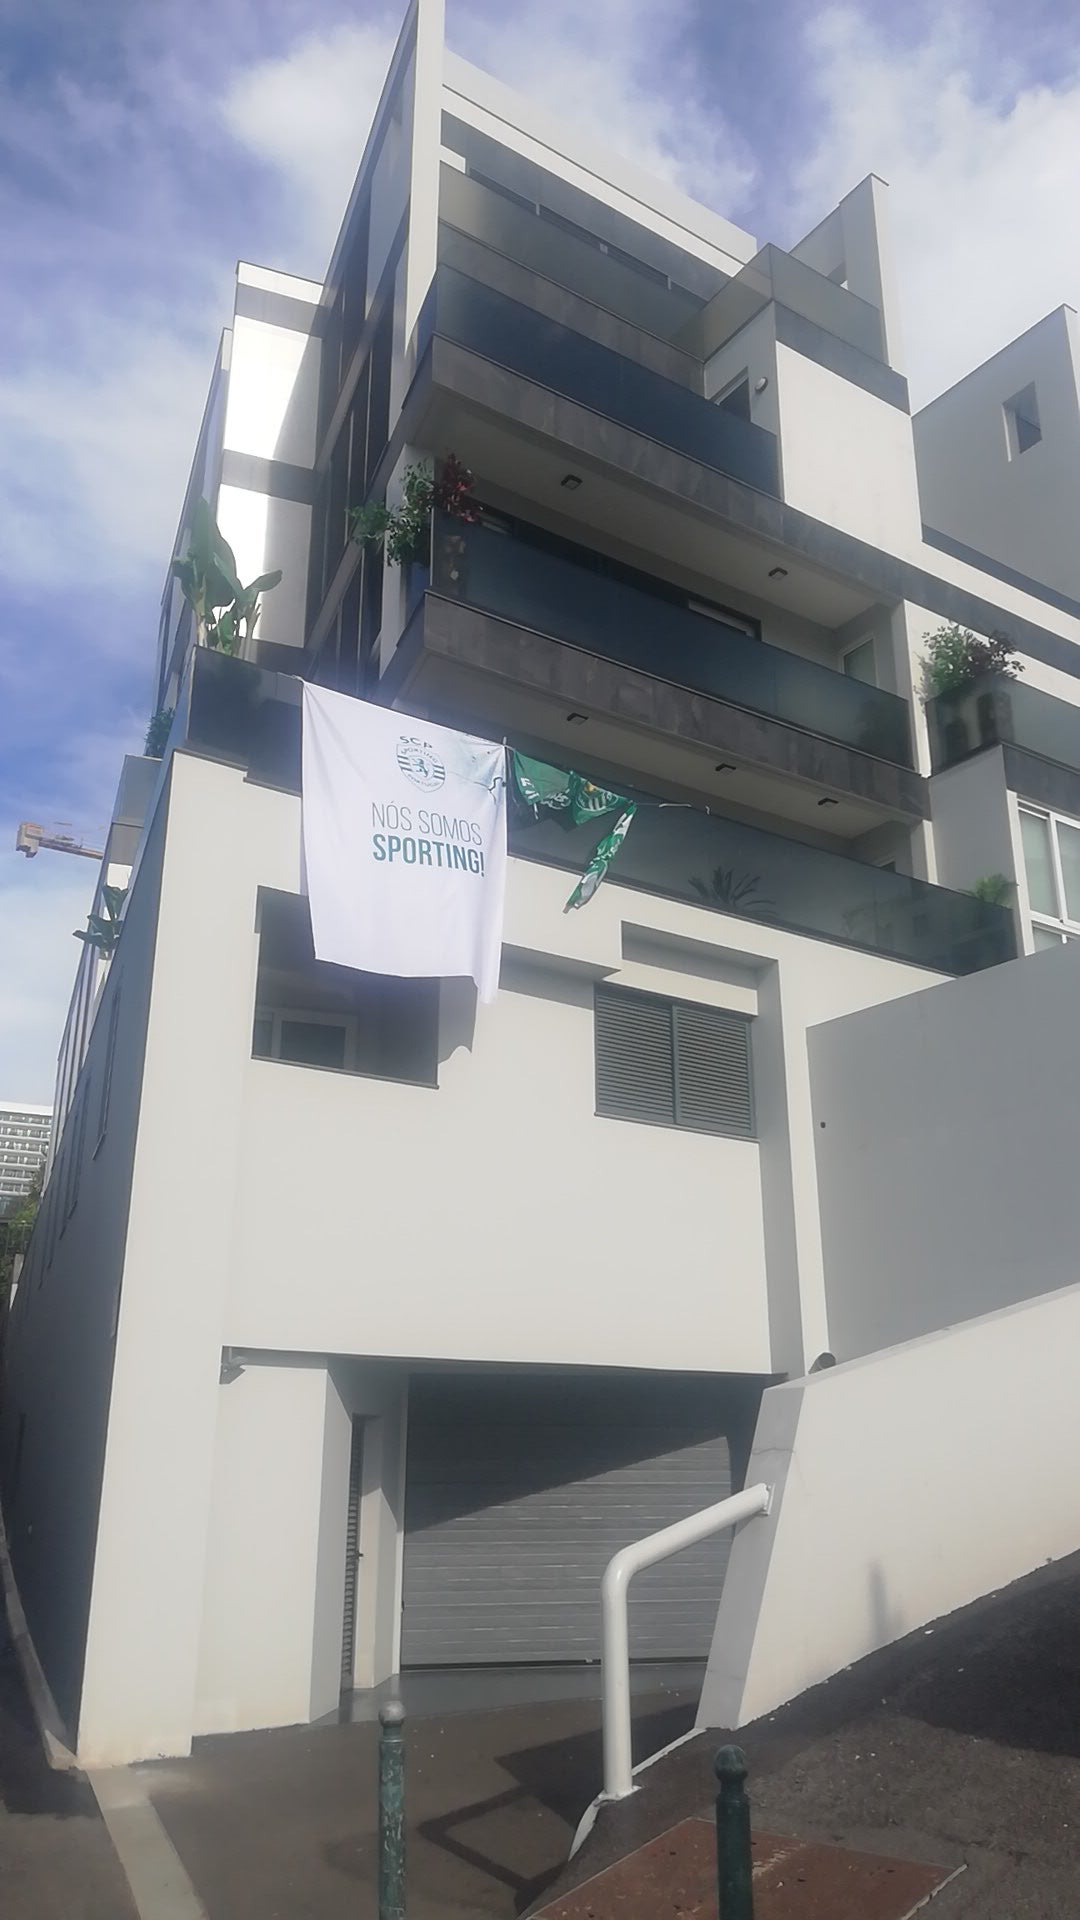 Casa de CR7 com bandeiras do Sporting